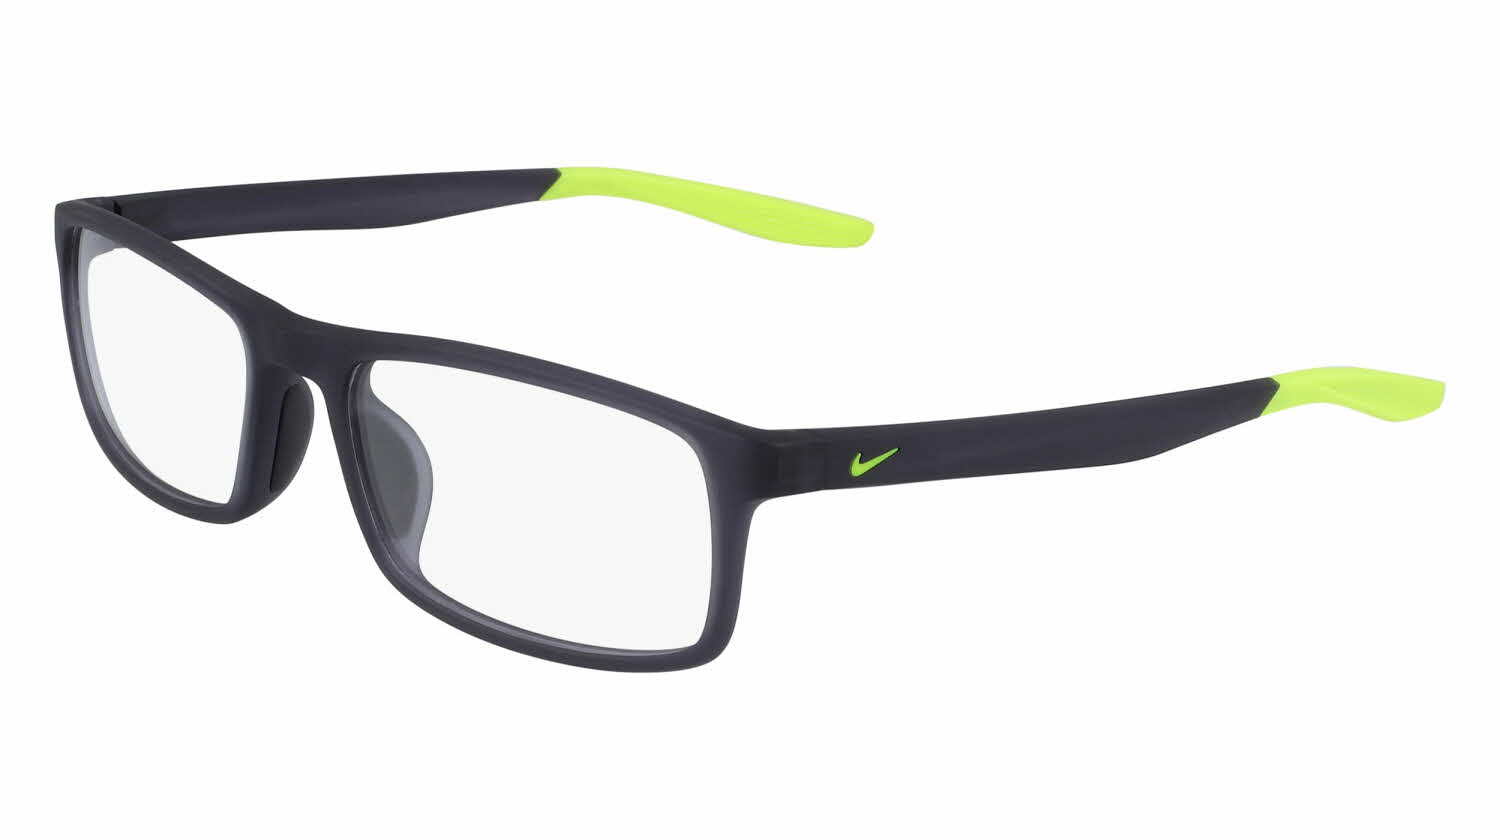 Nike 7119 Eyeglasses In Grey